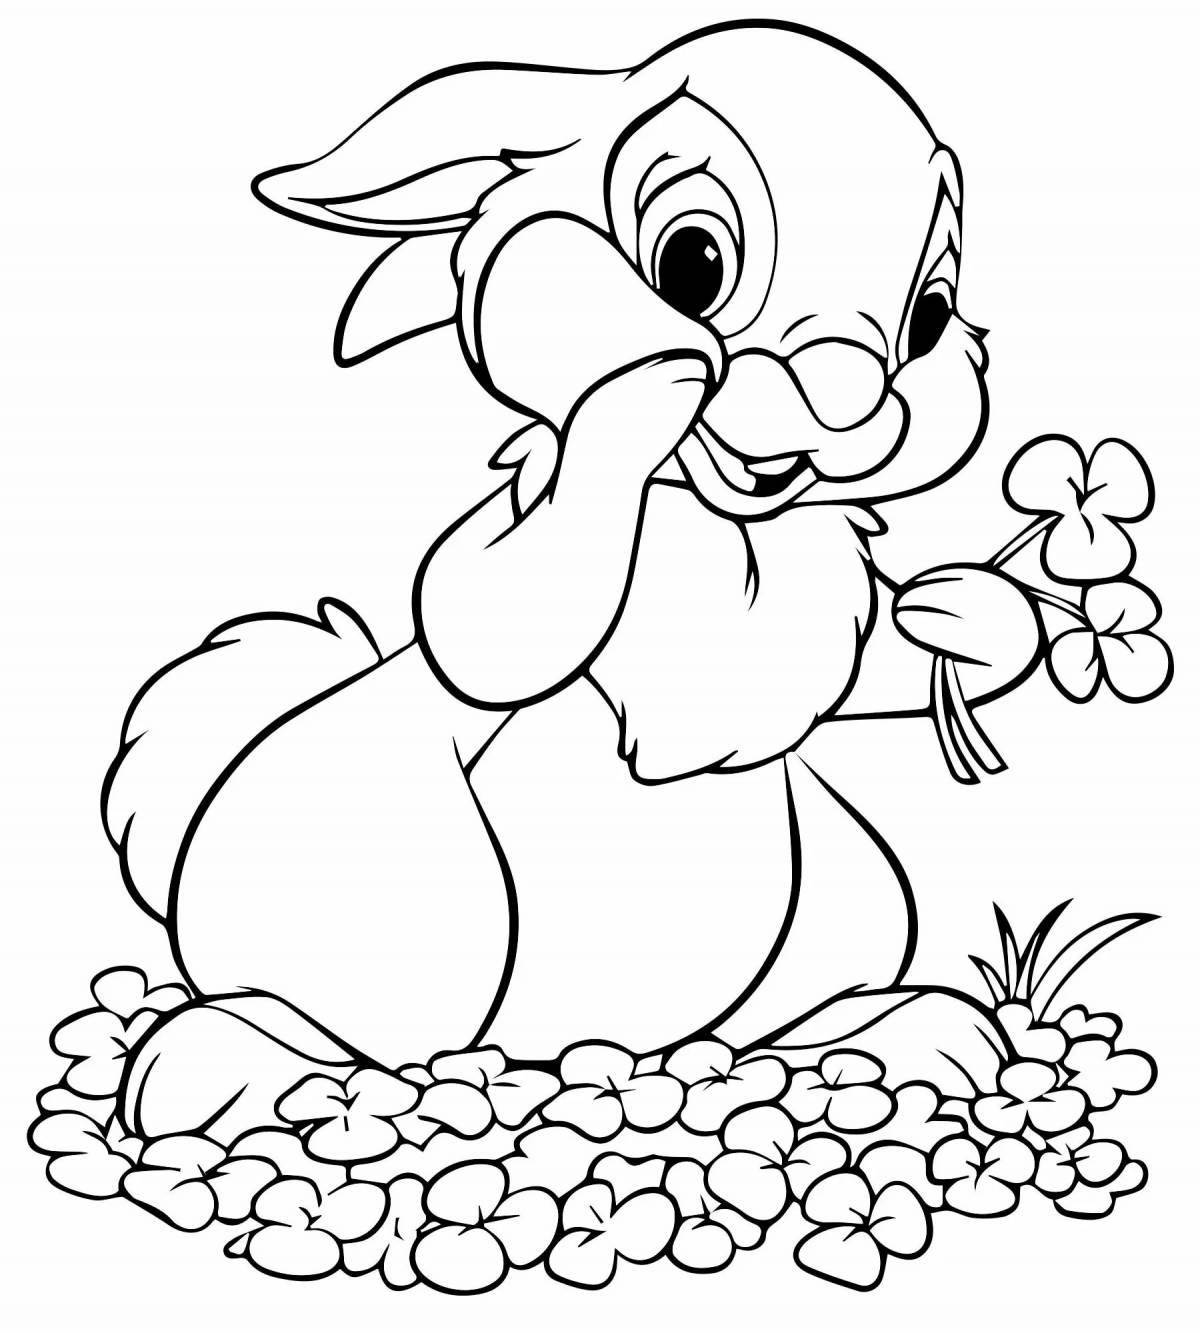 Остроумная раскраска кролик для детей